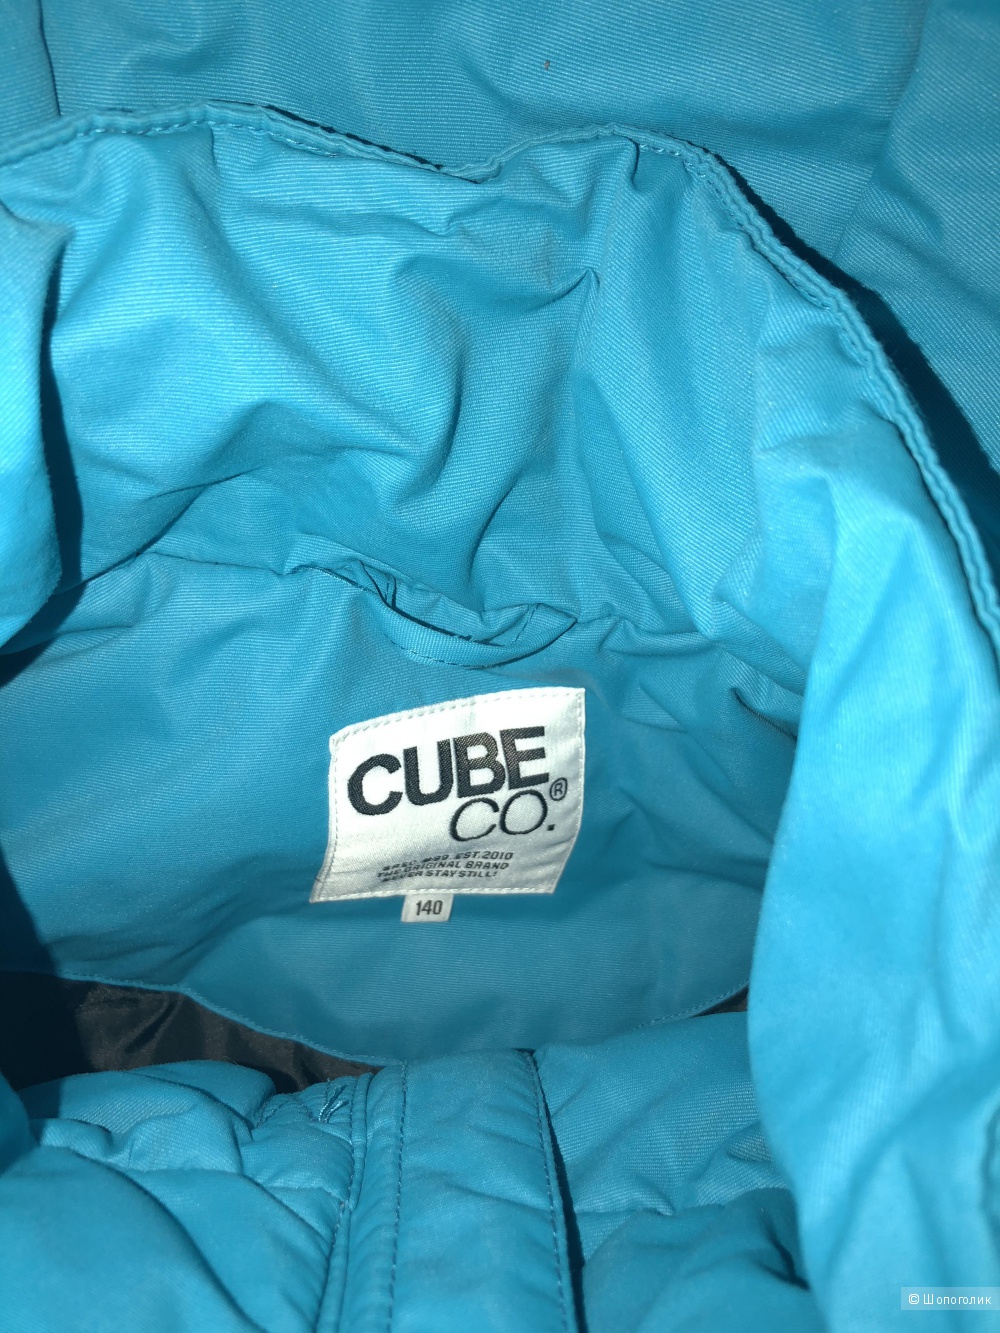 Куртка на мальчика 140 (7-9 лет) Cube co